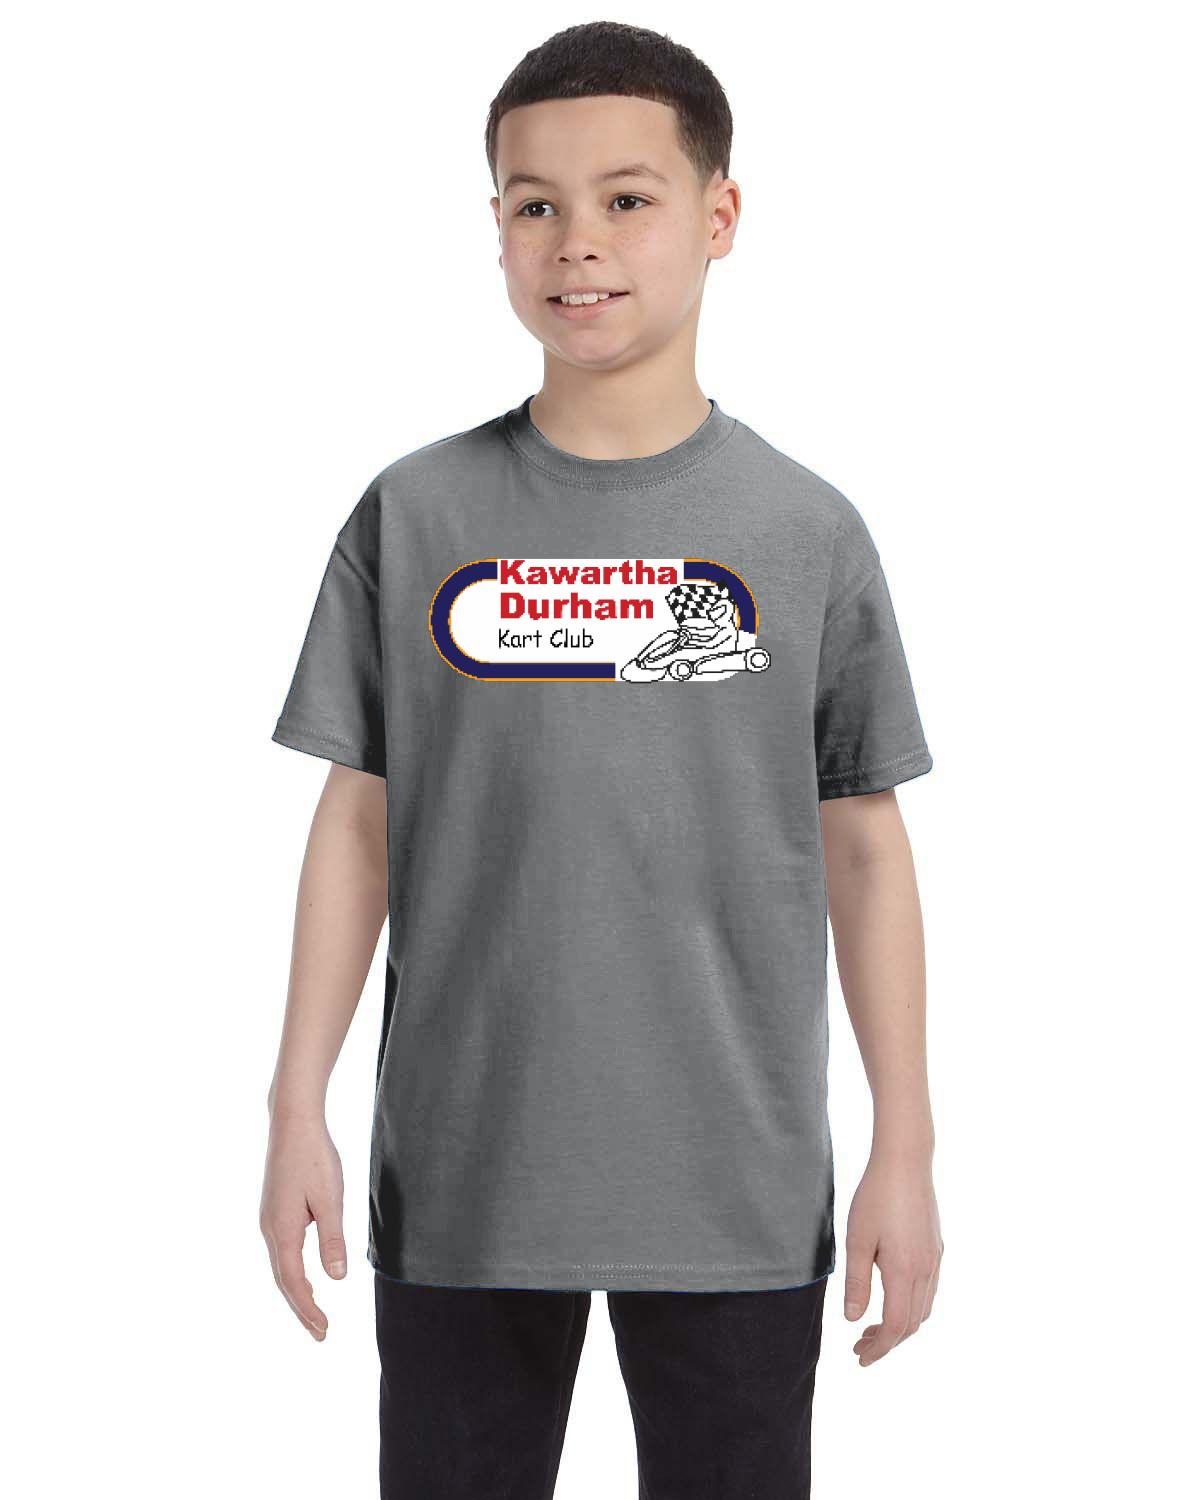 Kawartha Durham Kart Club Kid's T-Shirt